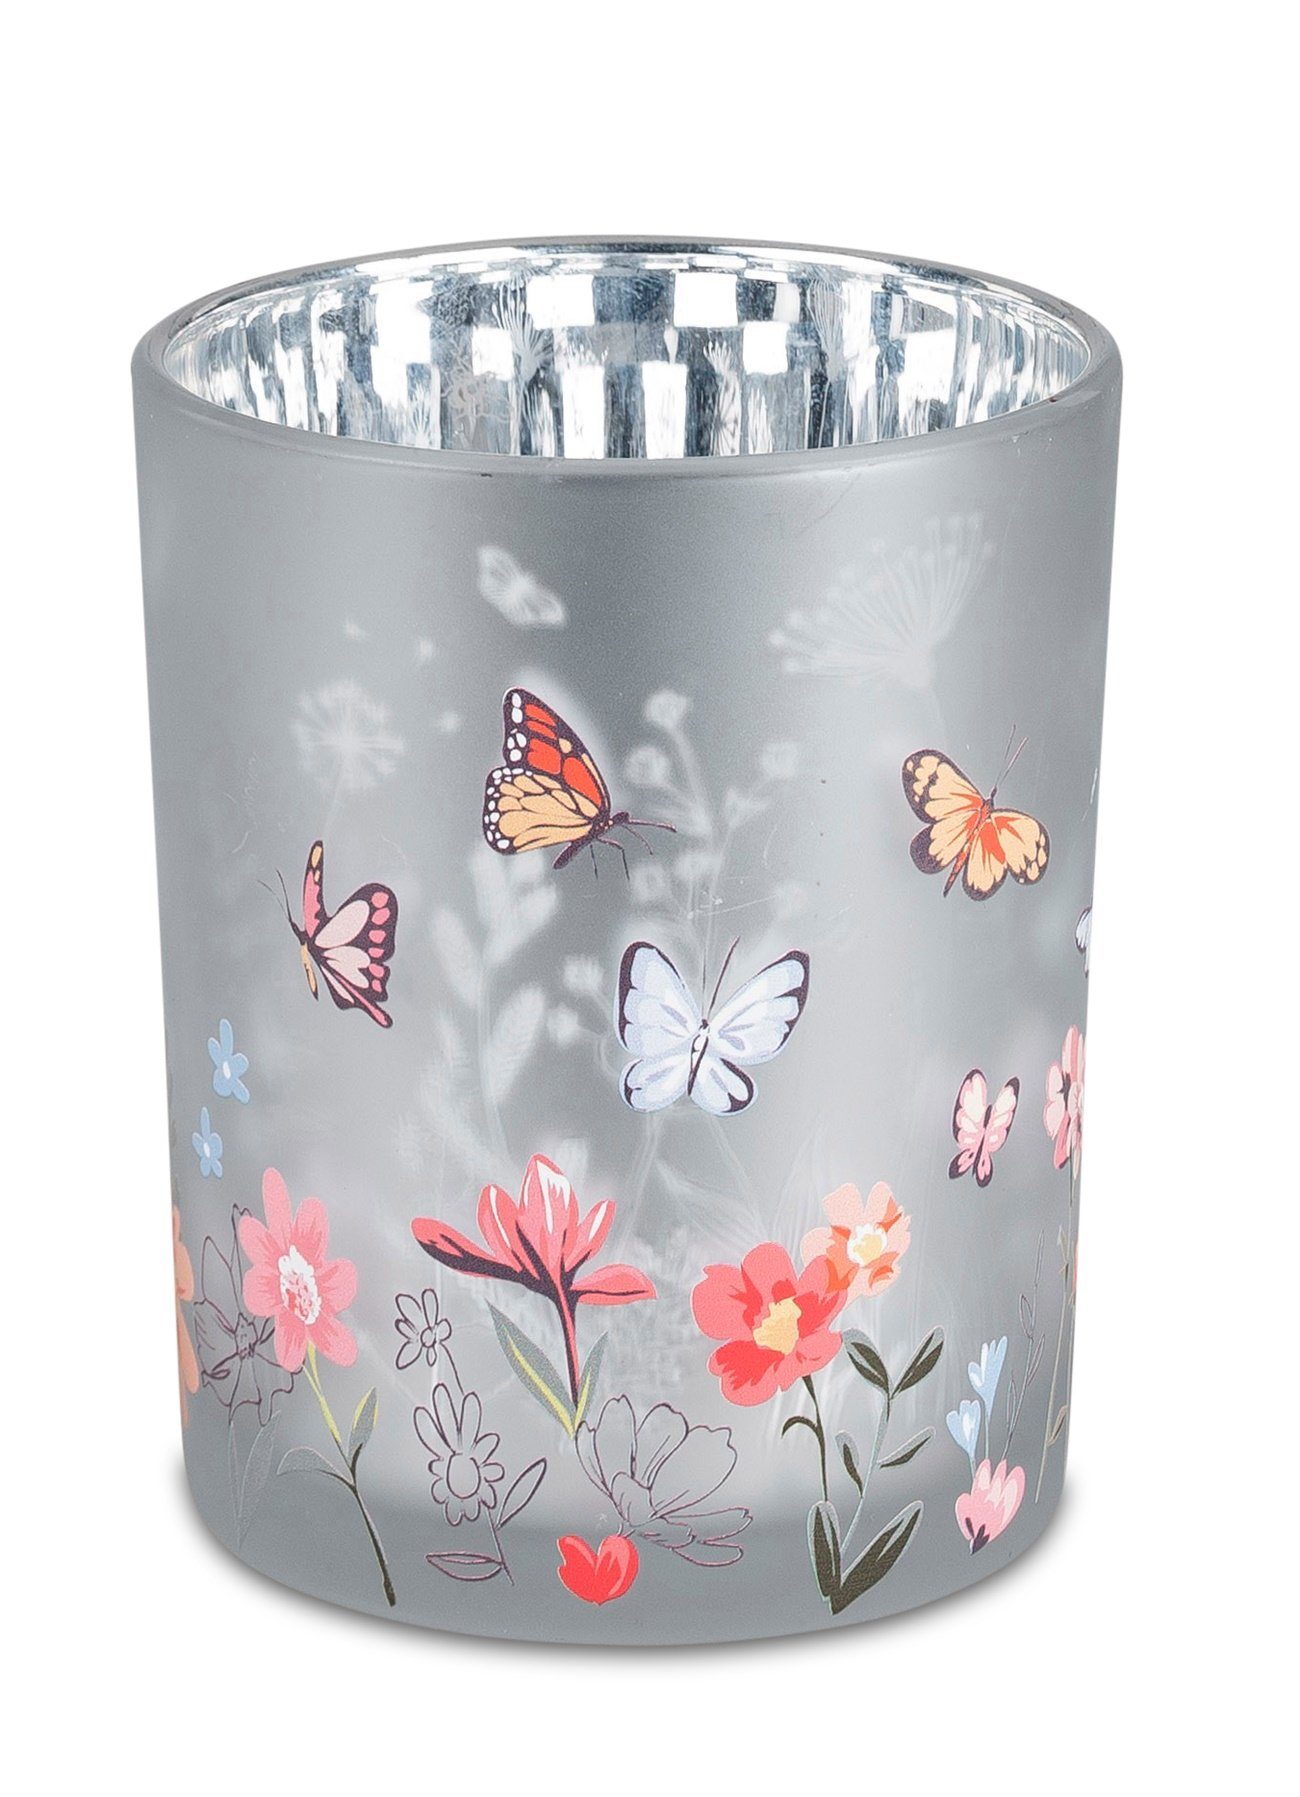 dekojohnson Windlicht dekojohnson schönes Windlicht-Glas modern dekorativer Teelichthalter